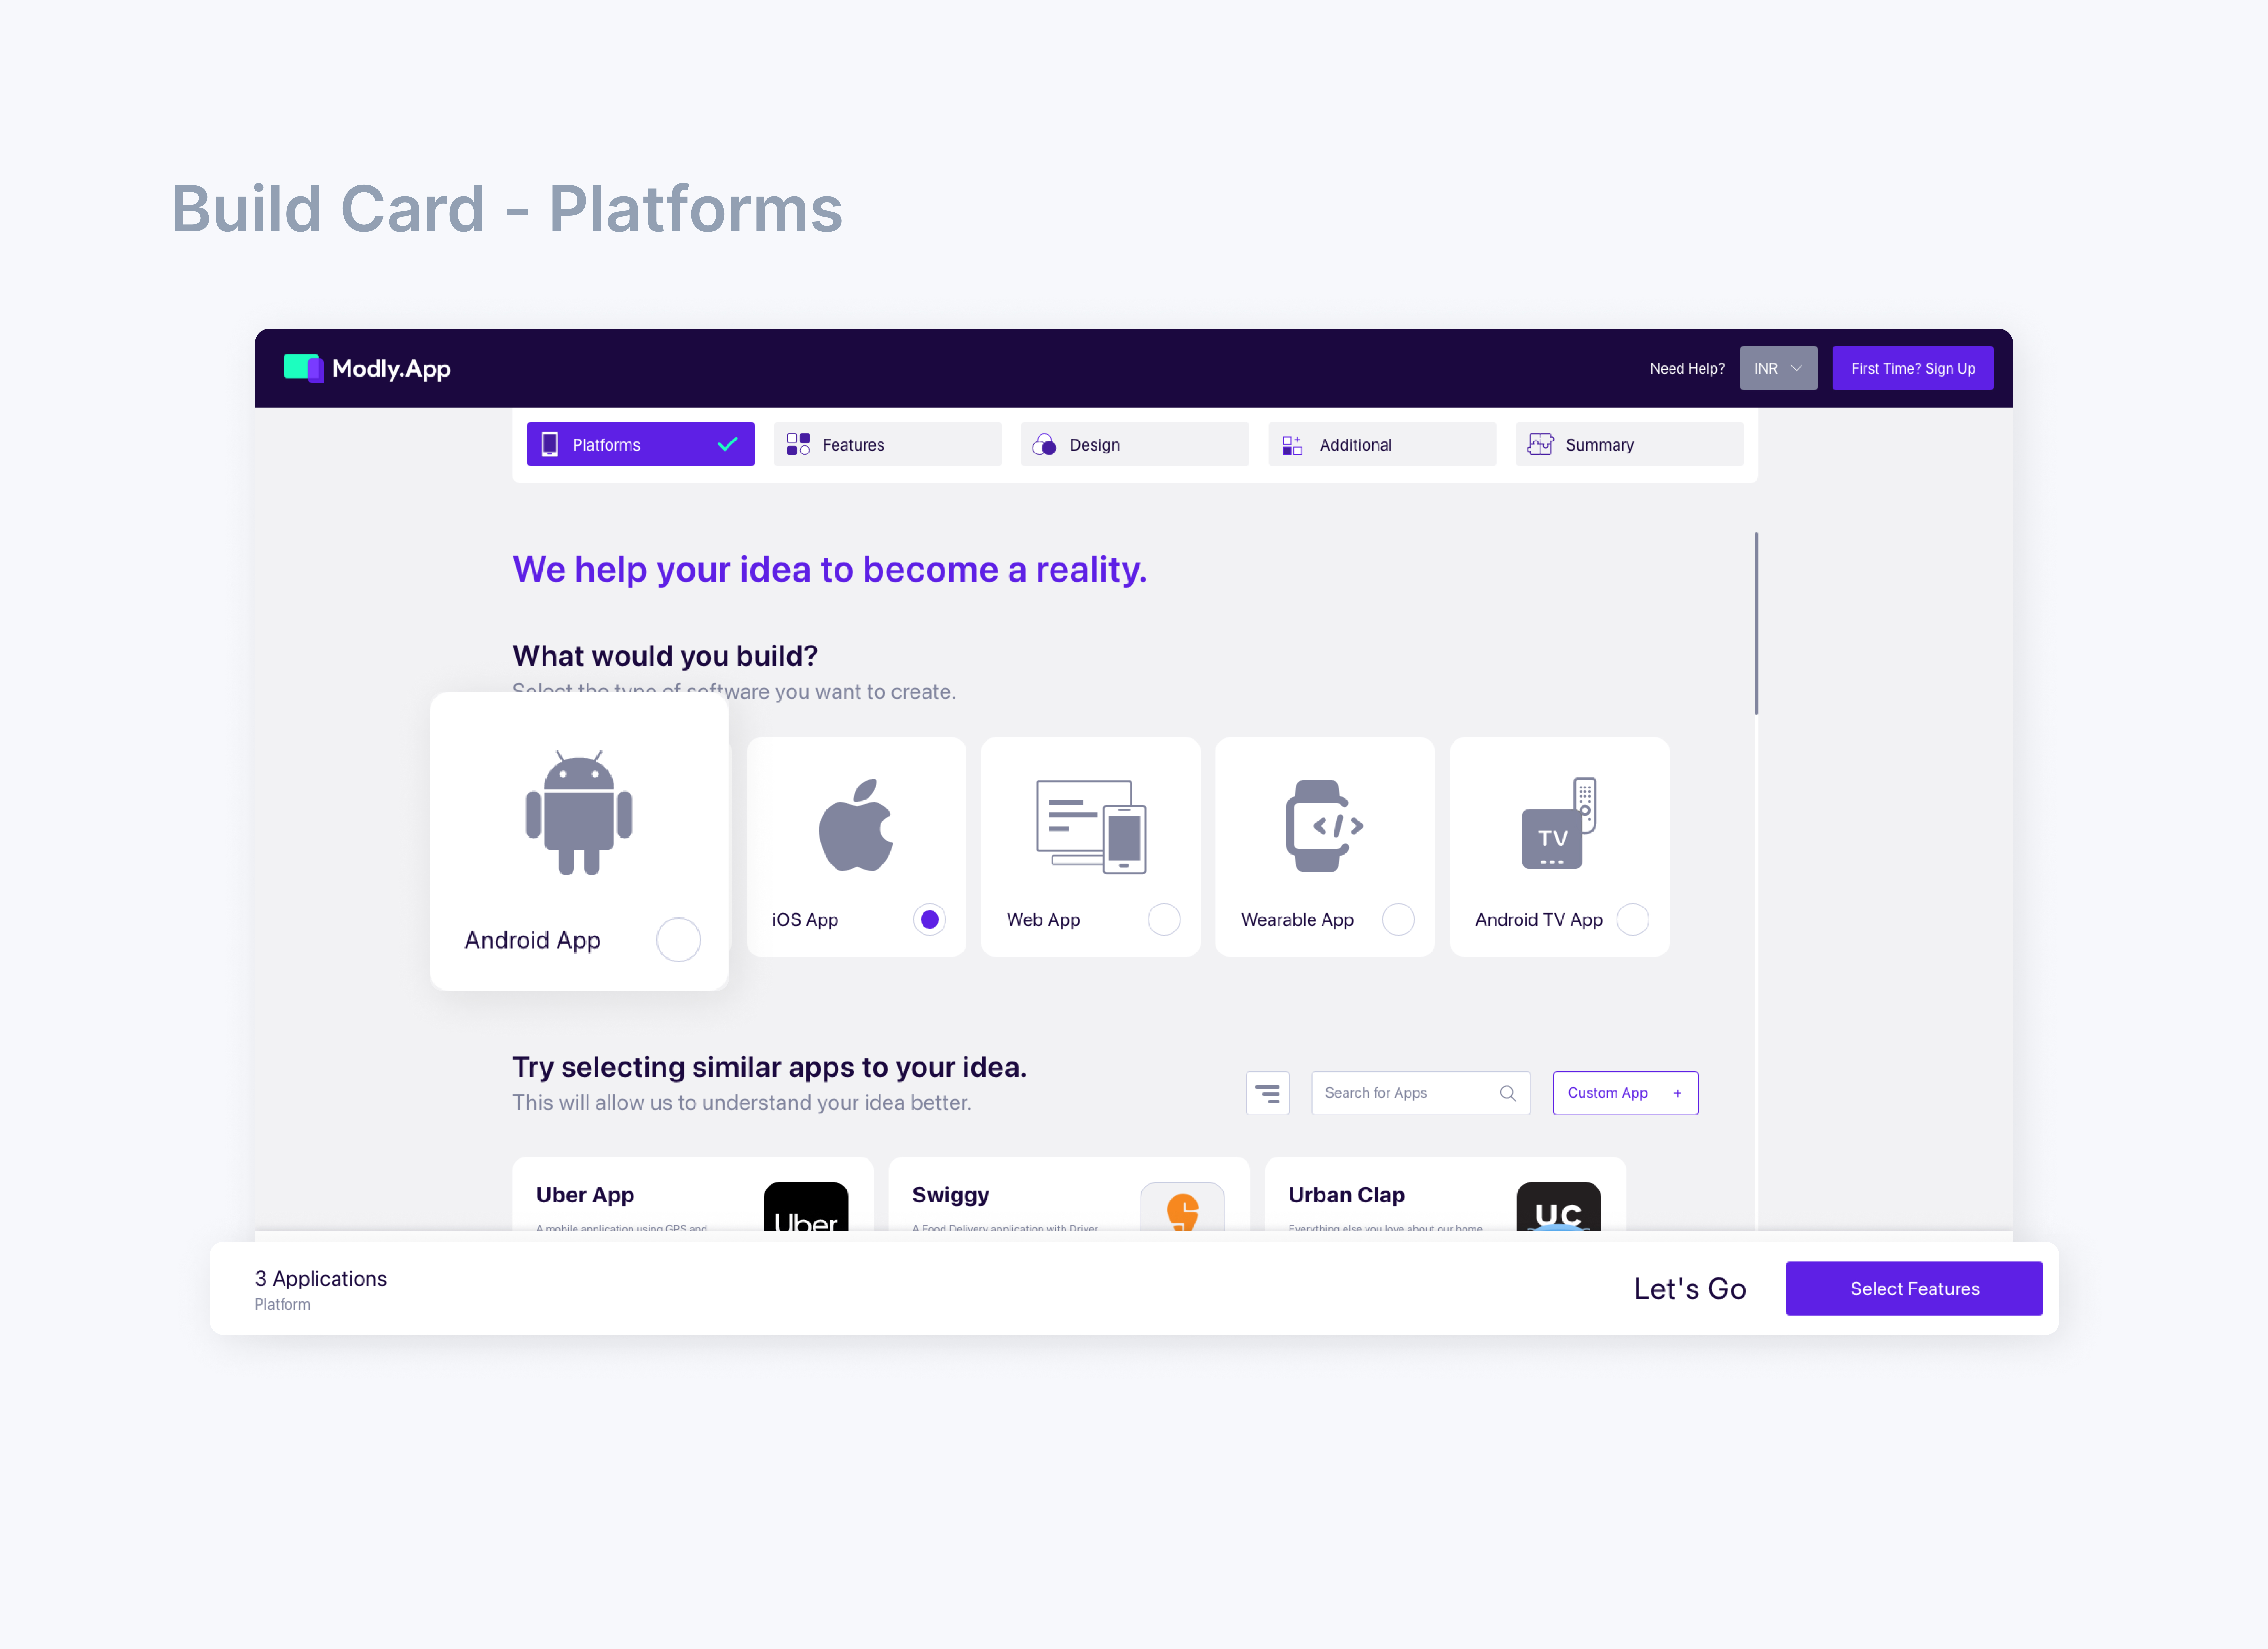 5.Build-Card-Platforms